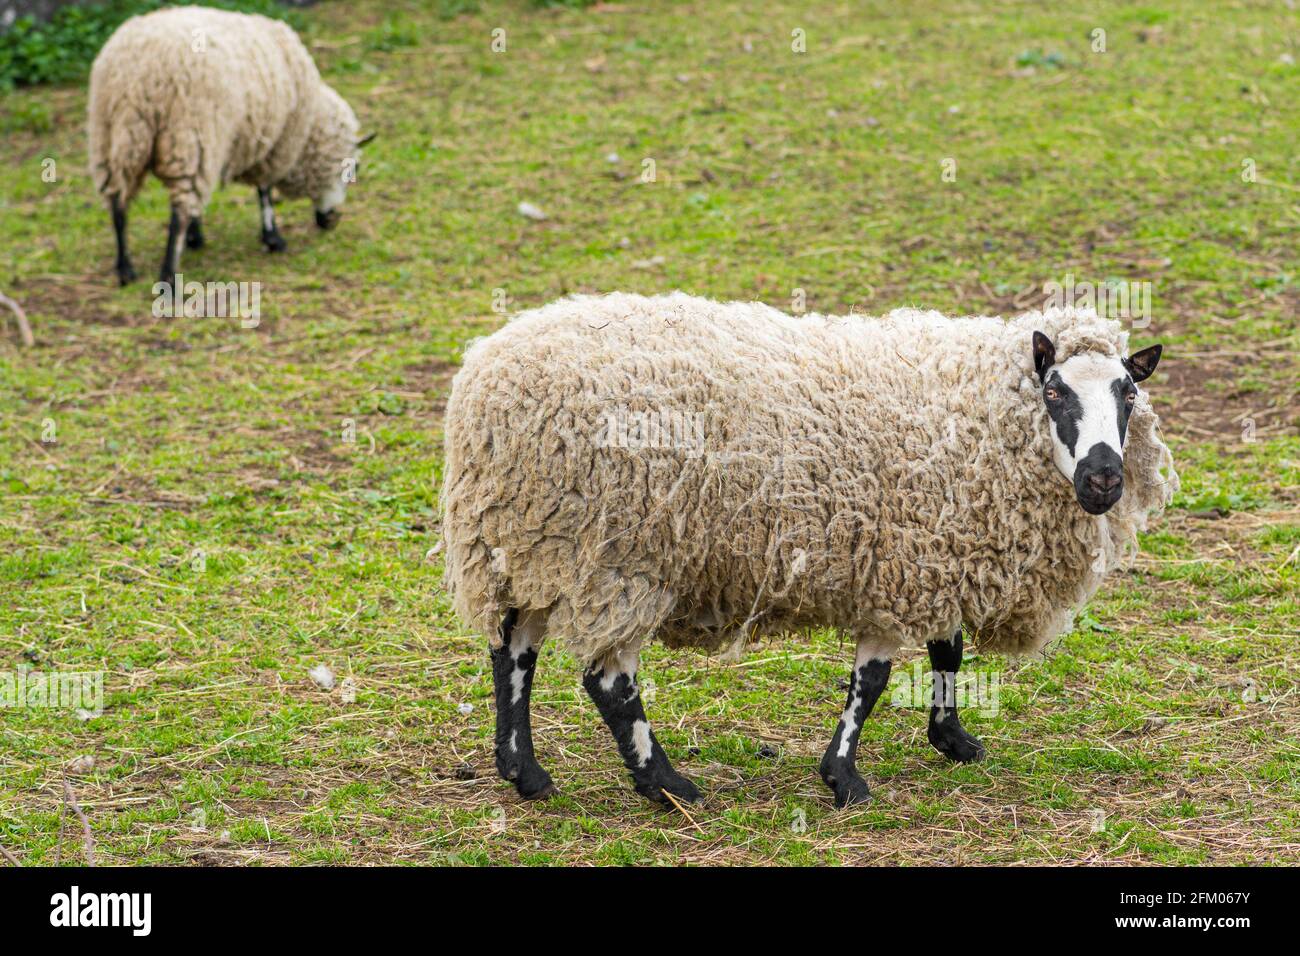 Kerry Hill mouton, est une race de mouton domestique originaire du comté de Powys au pays de Galles, la laine est blanche, et leurs jambes sont blanches avec un marquage noir Banque D'Images